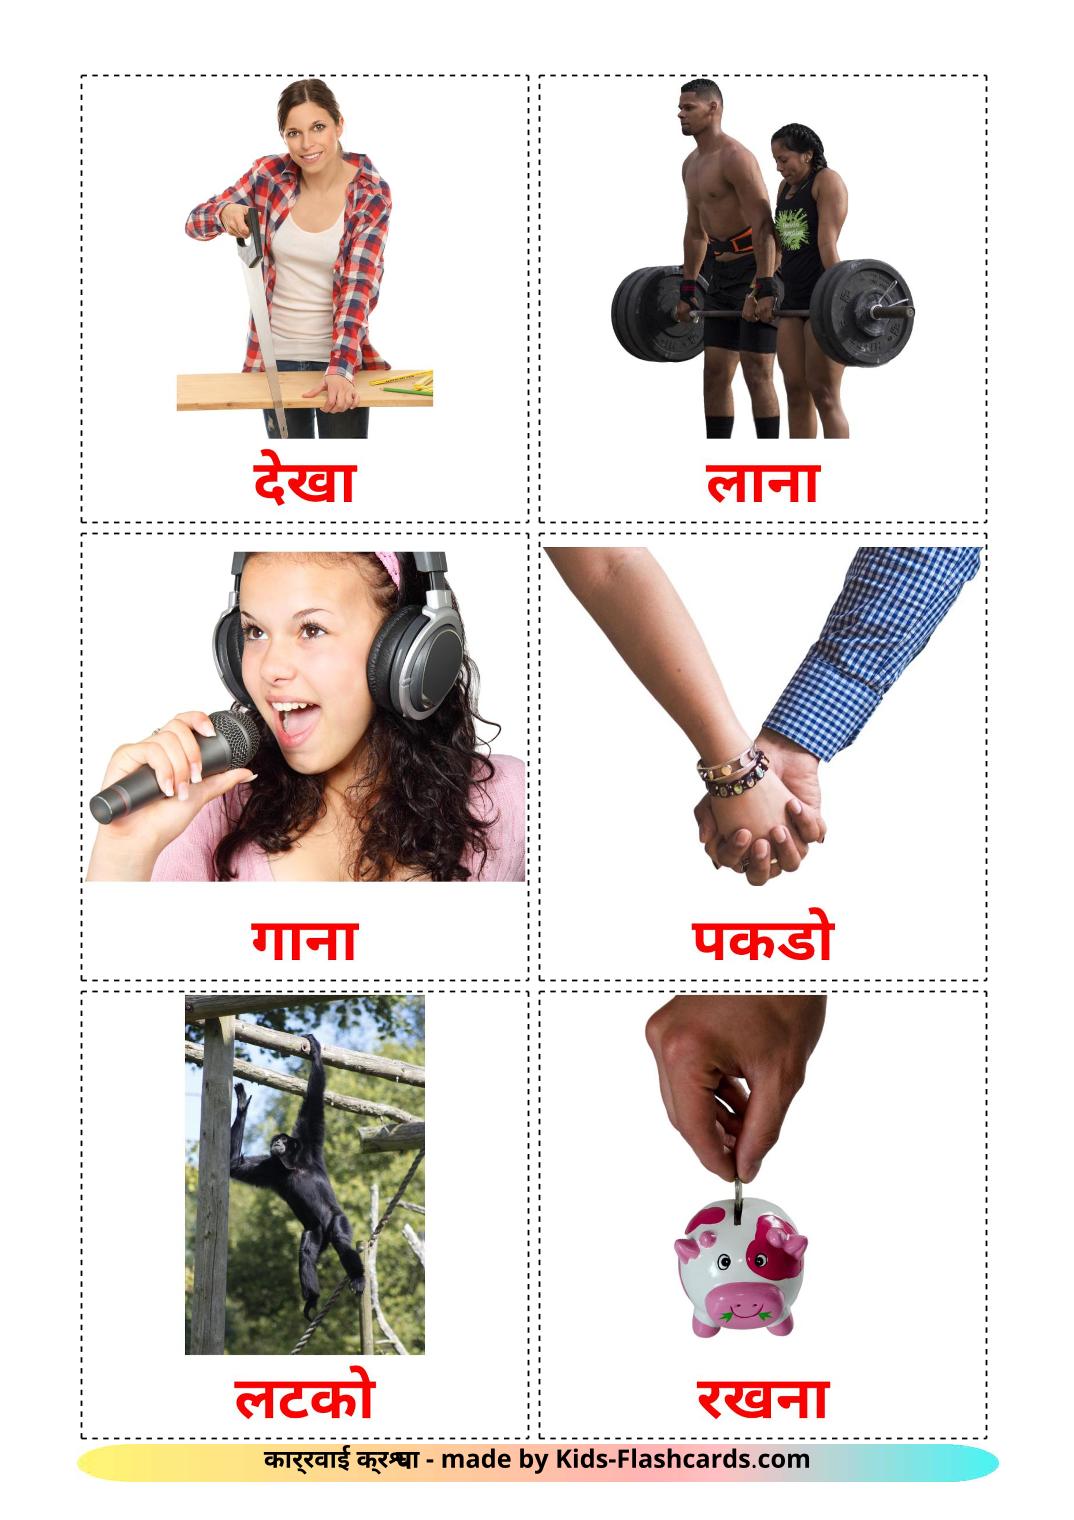 Verbos de acción - 51 fichas de hindi para imprimir gratis 